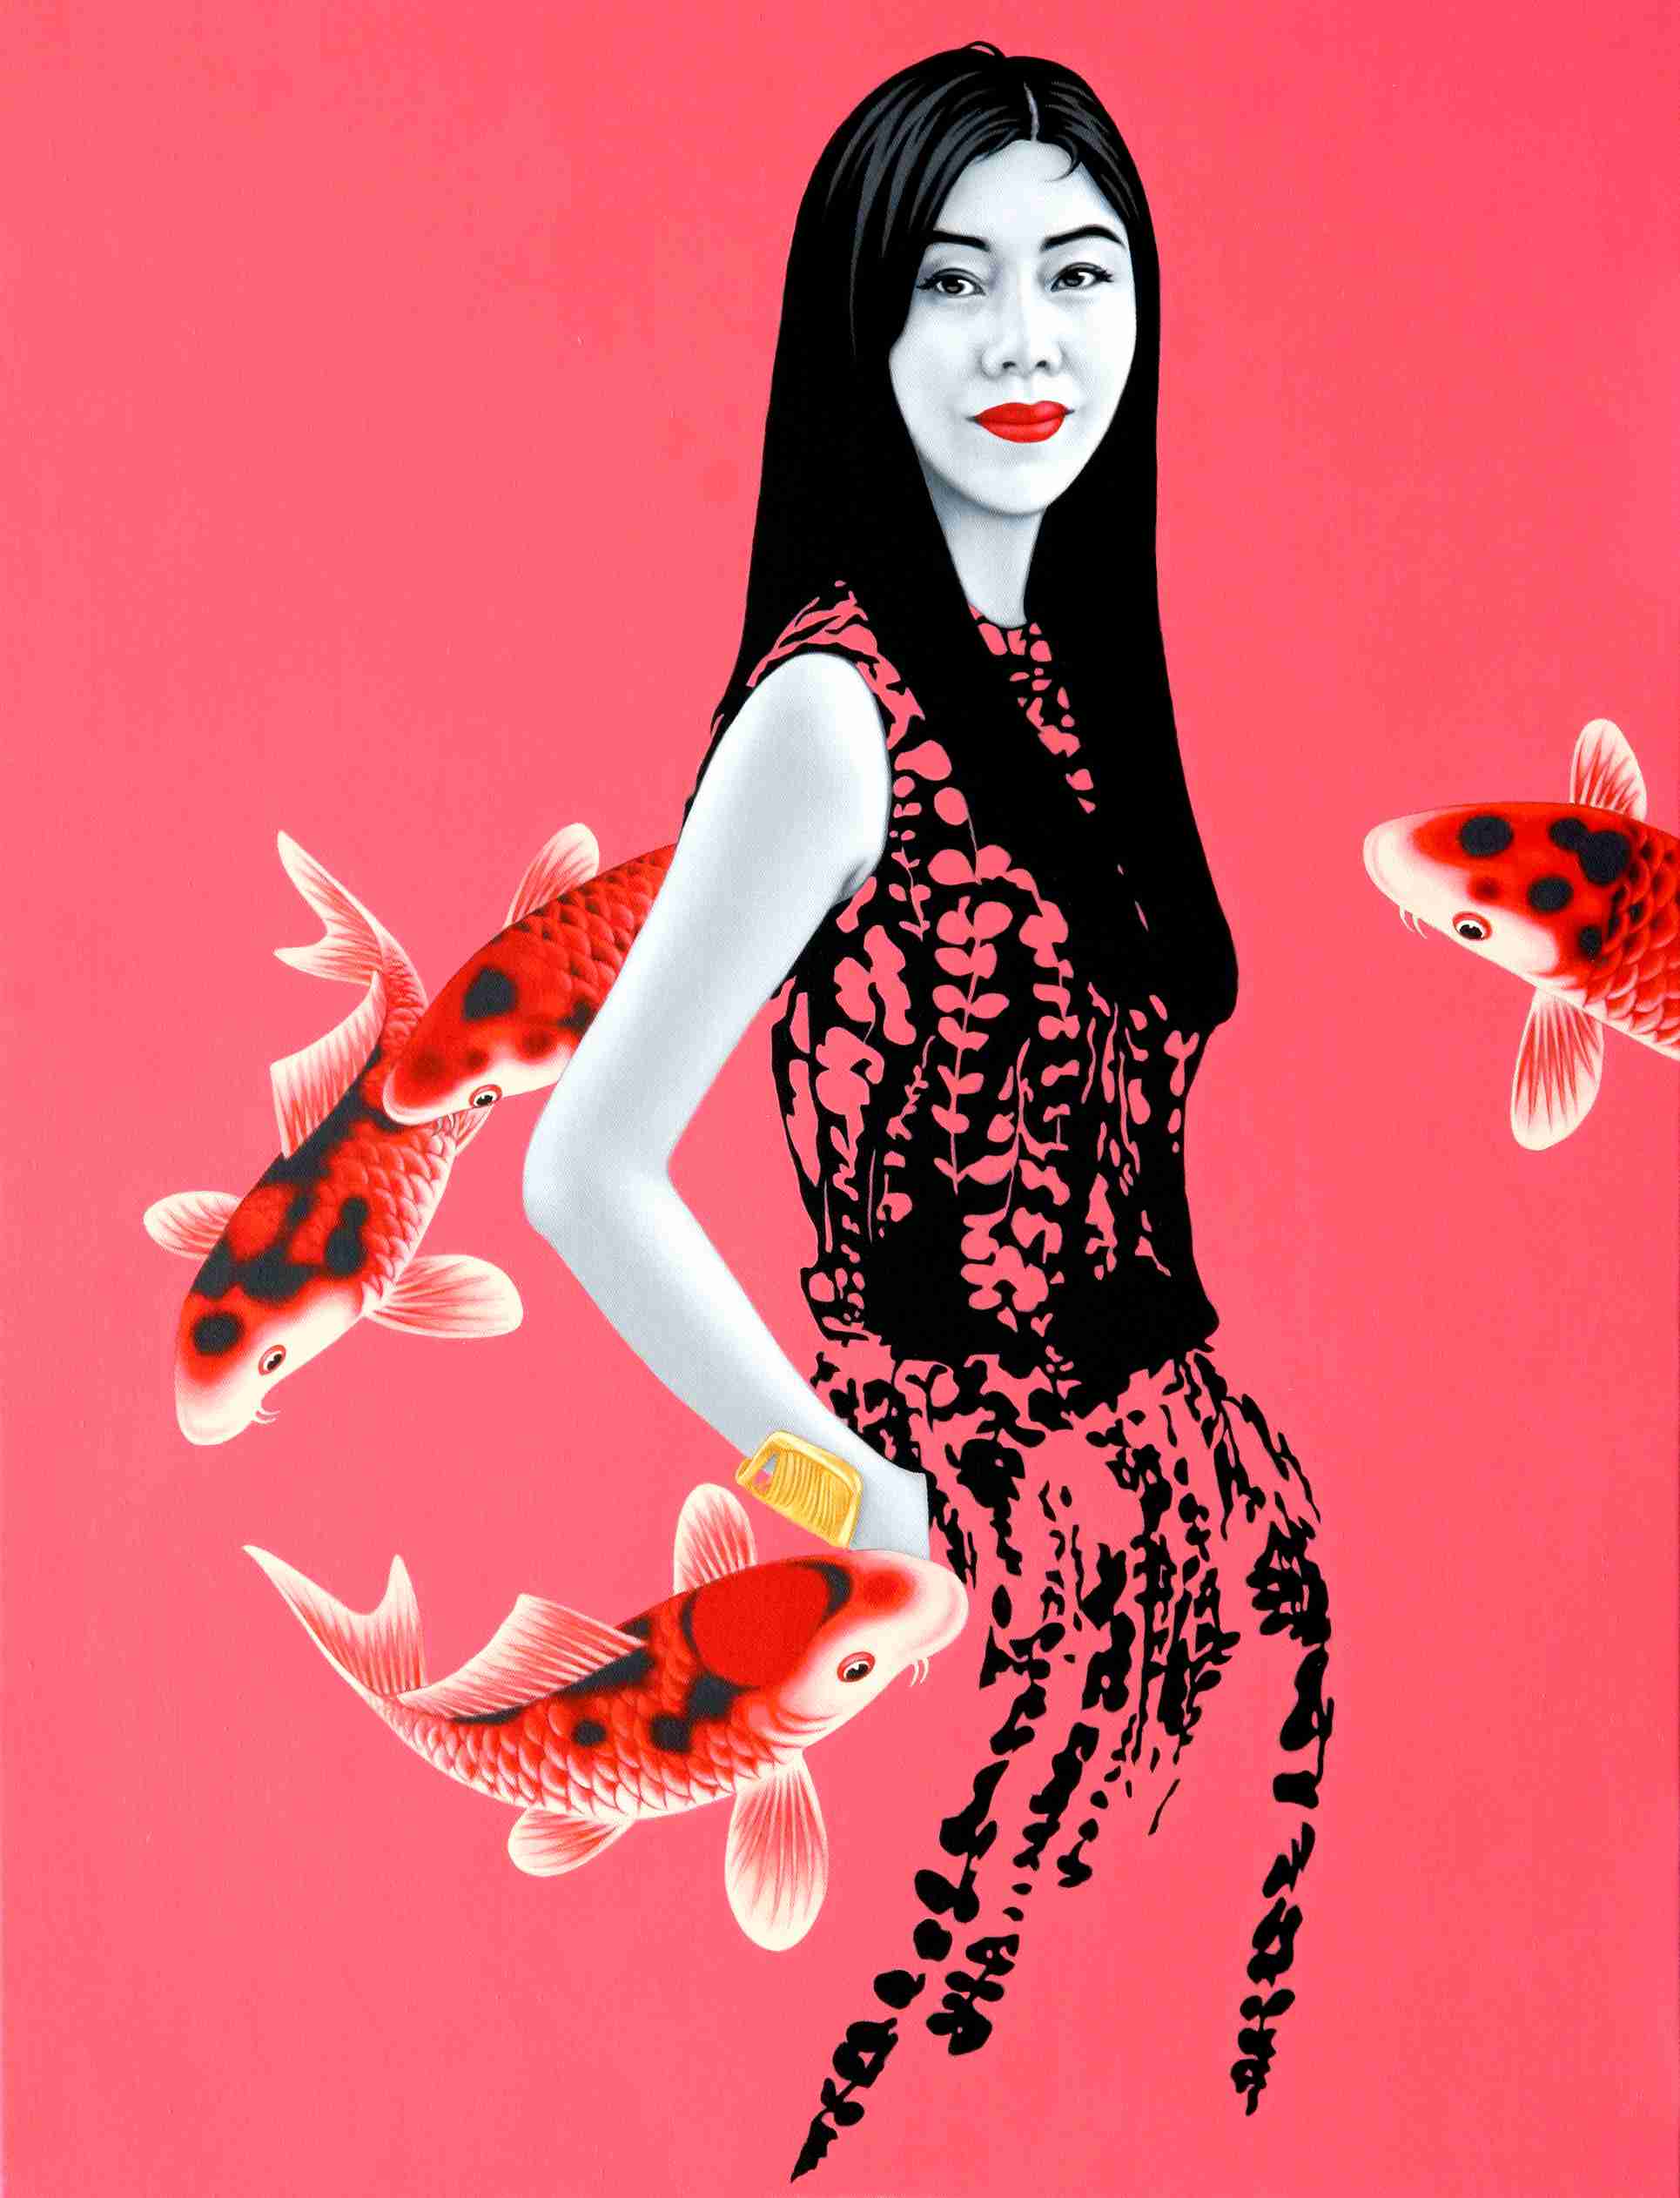 鱼·女孩  Fish Girl 35x35cm 布面油画 oil on canvas